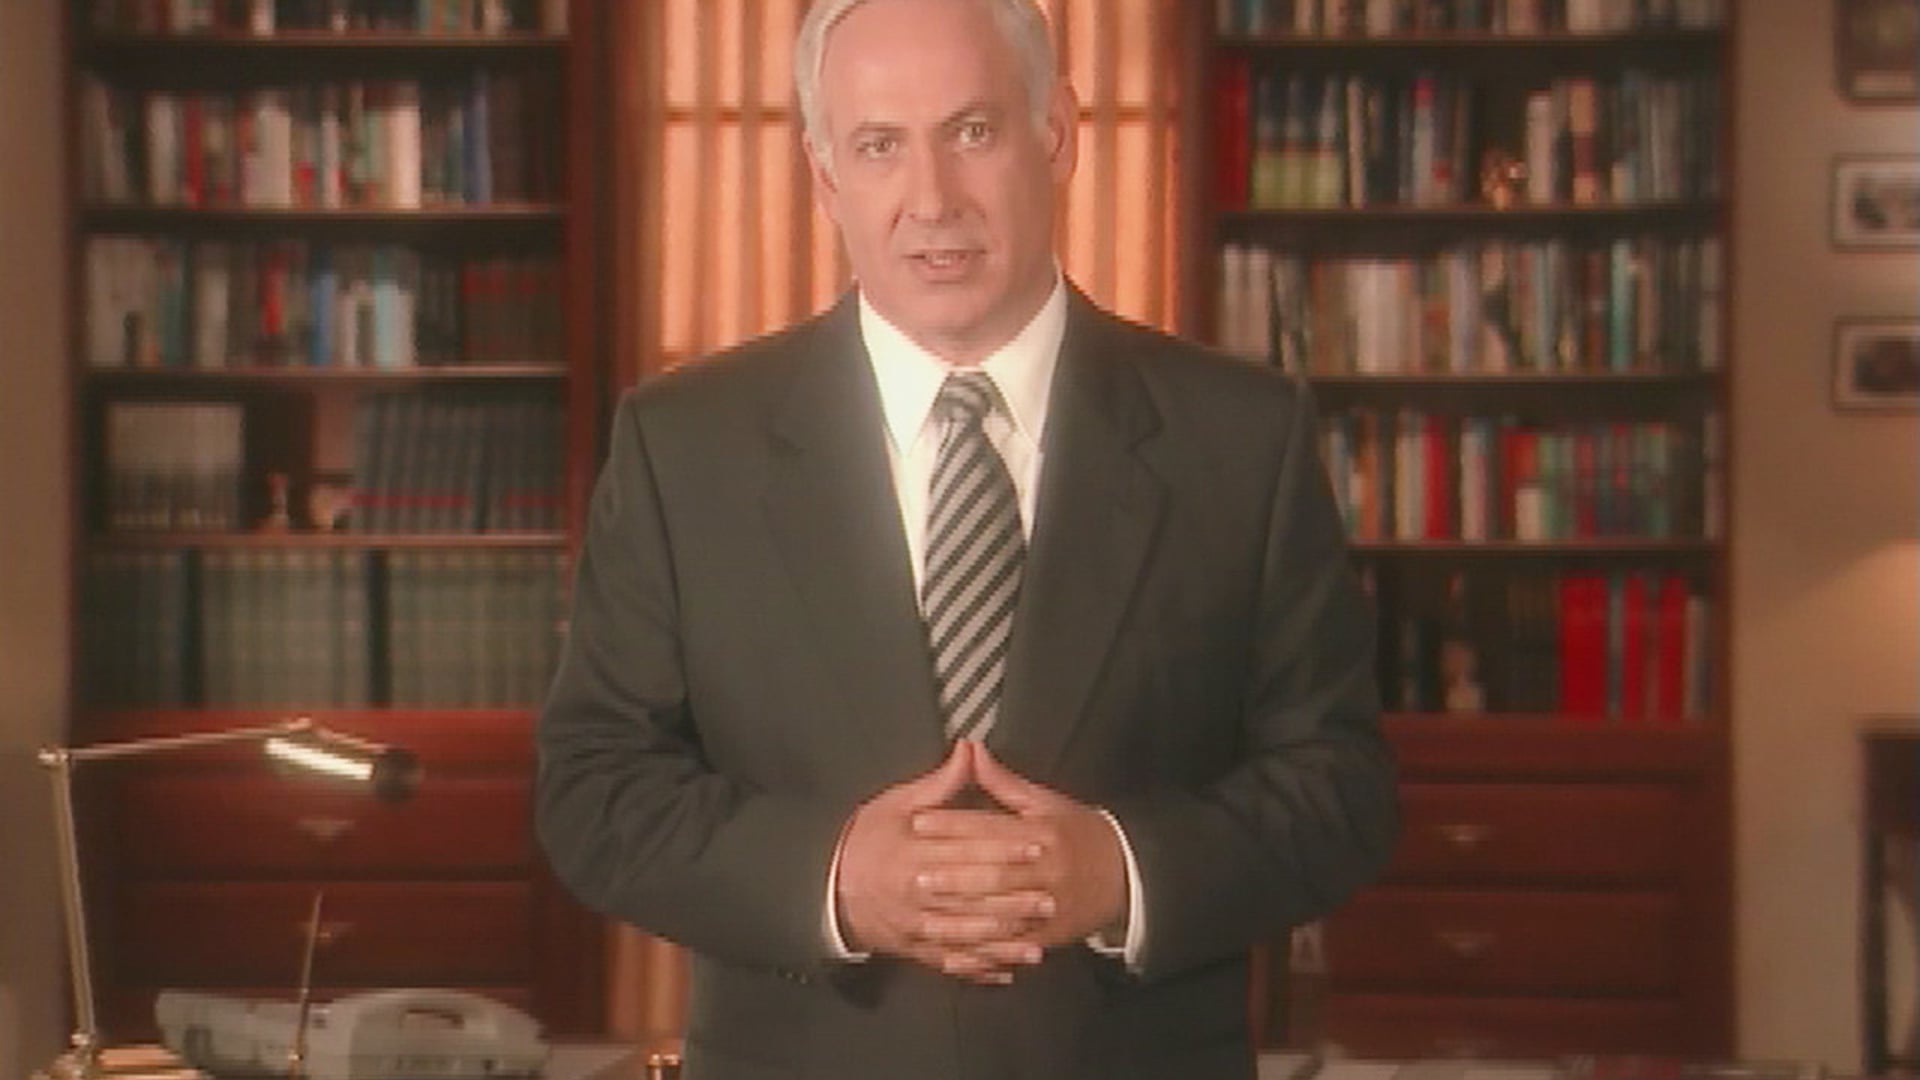 Netanyahu Speech